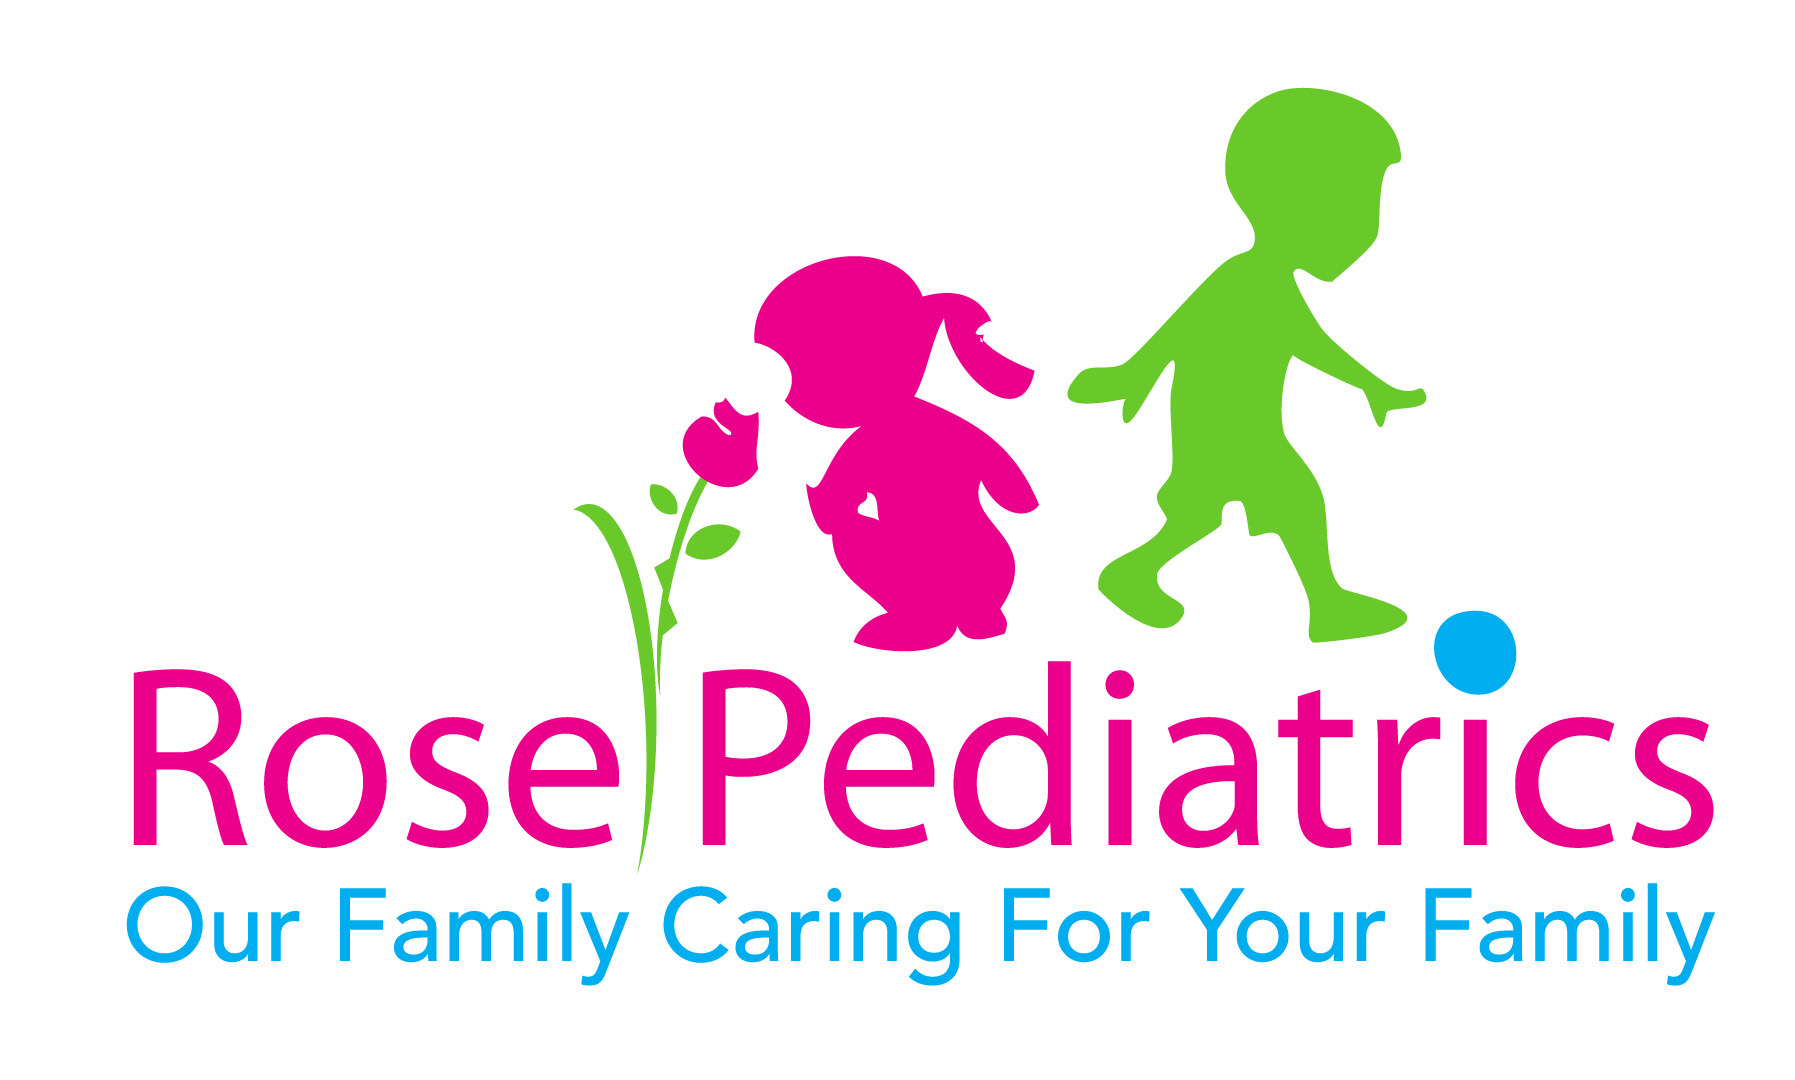 Rose Pediatrics